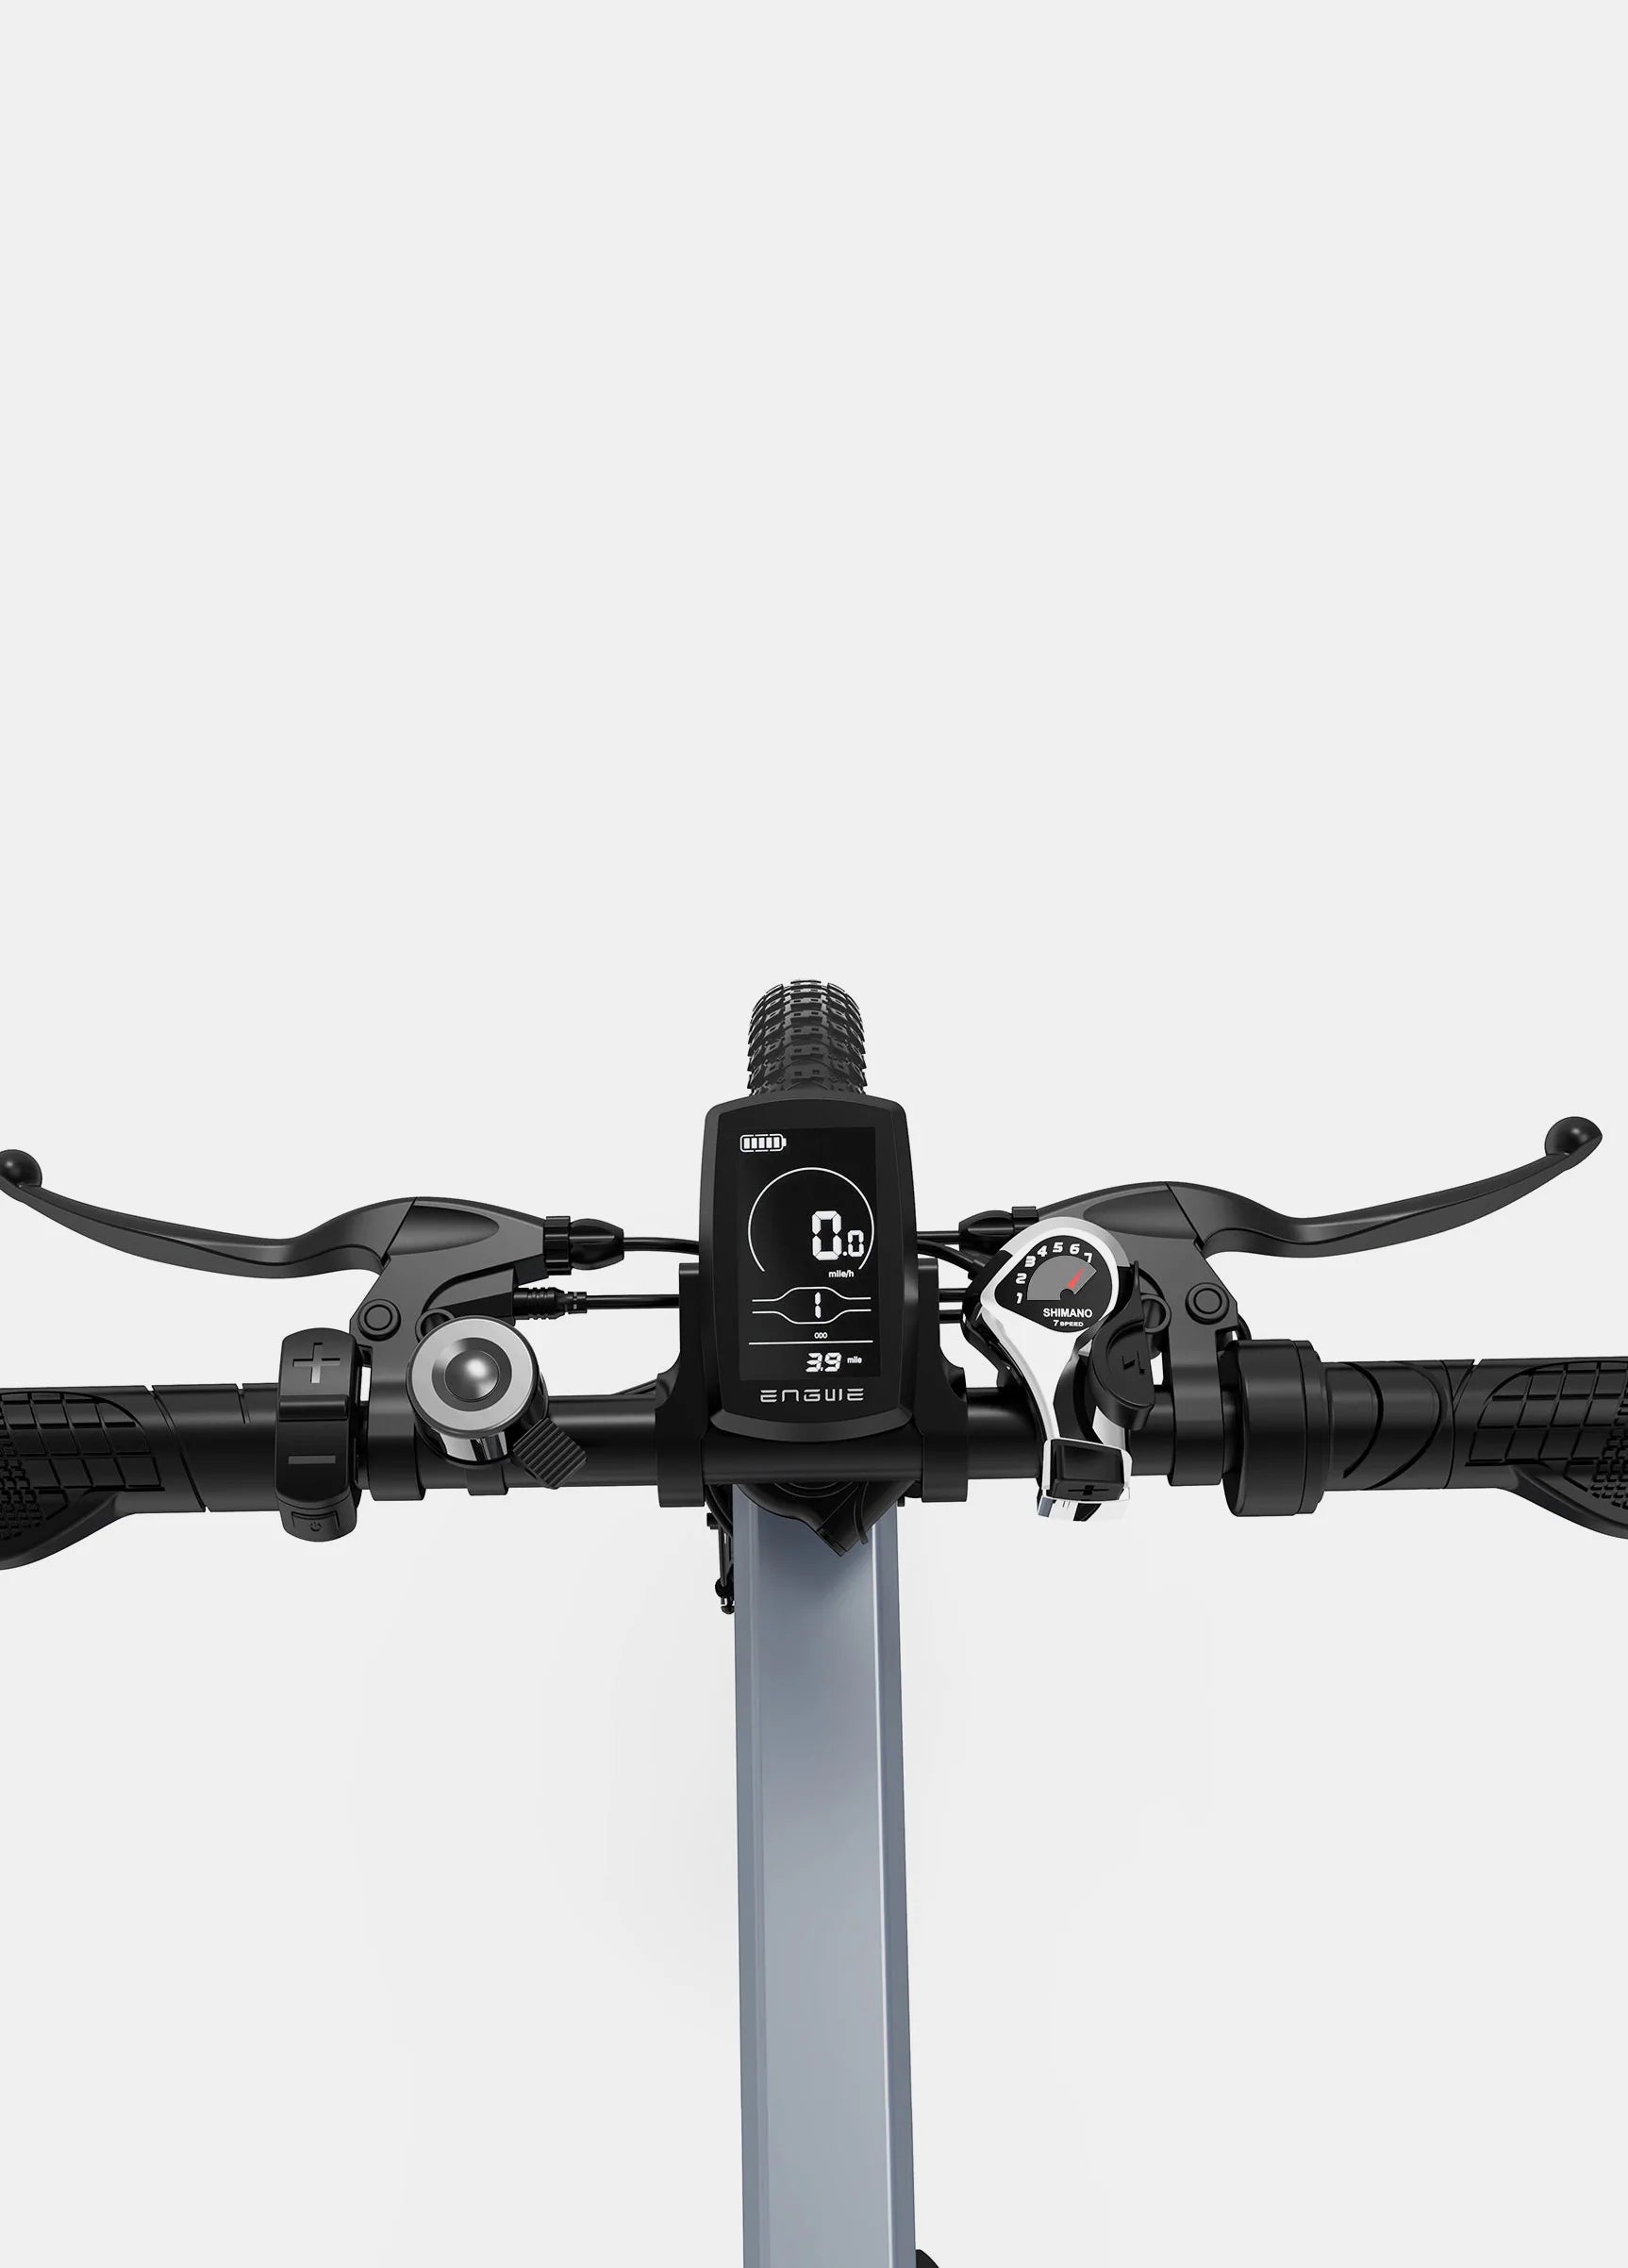 Vélo électrique Fatbike | Engwe C20 Pro (Upgraded Version) | 250 W | V-max 25 km/h | Autonomie 150 km - Atom Motors